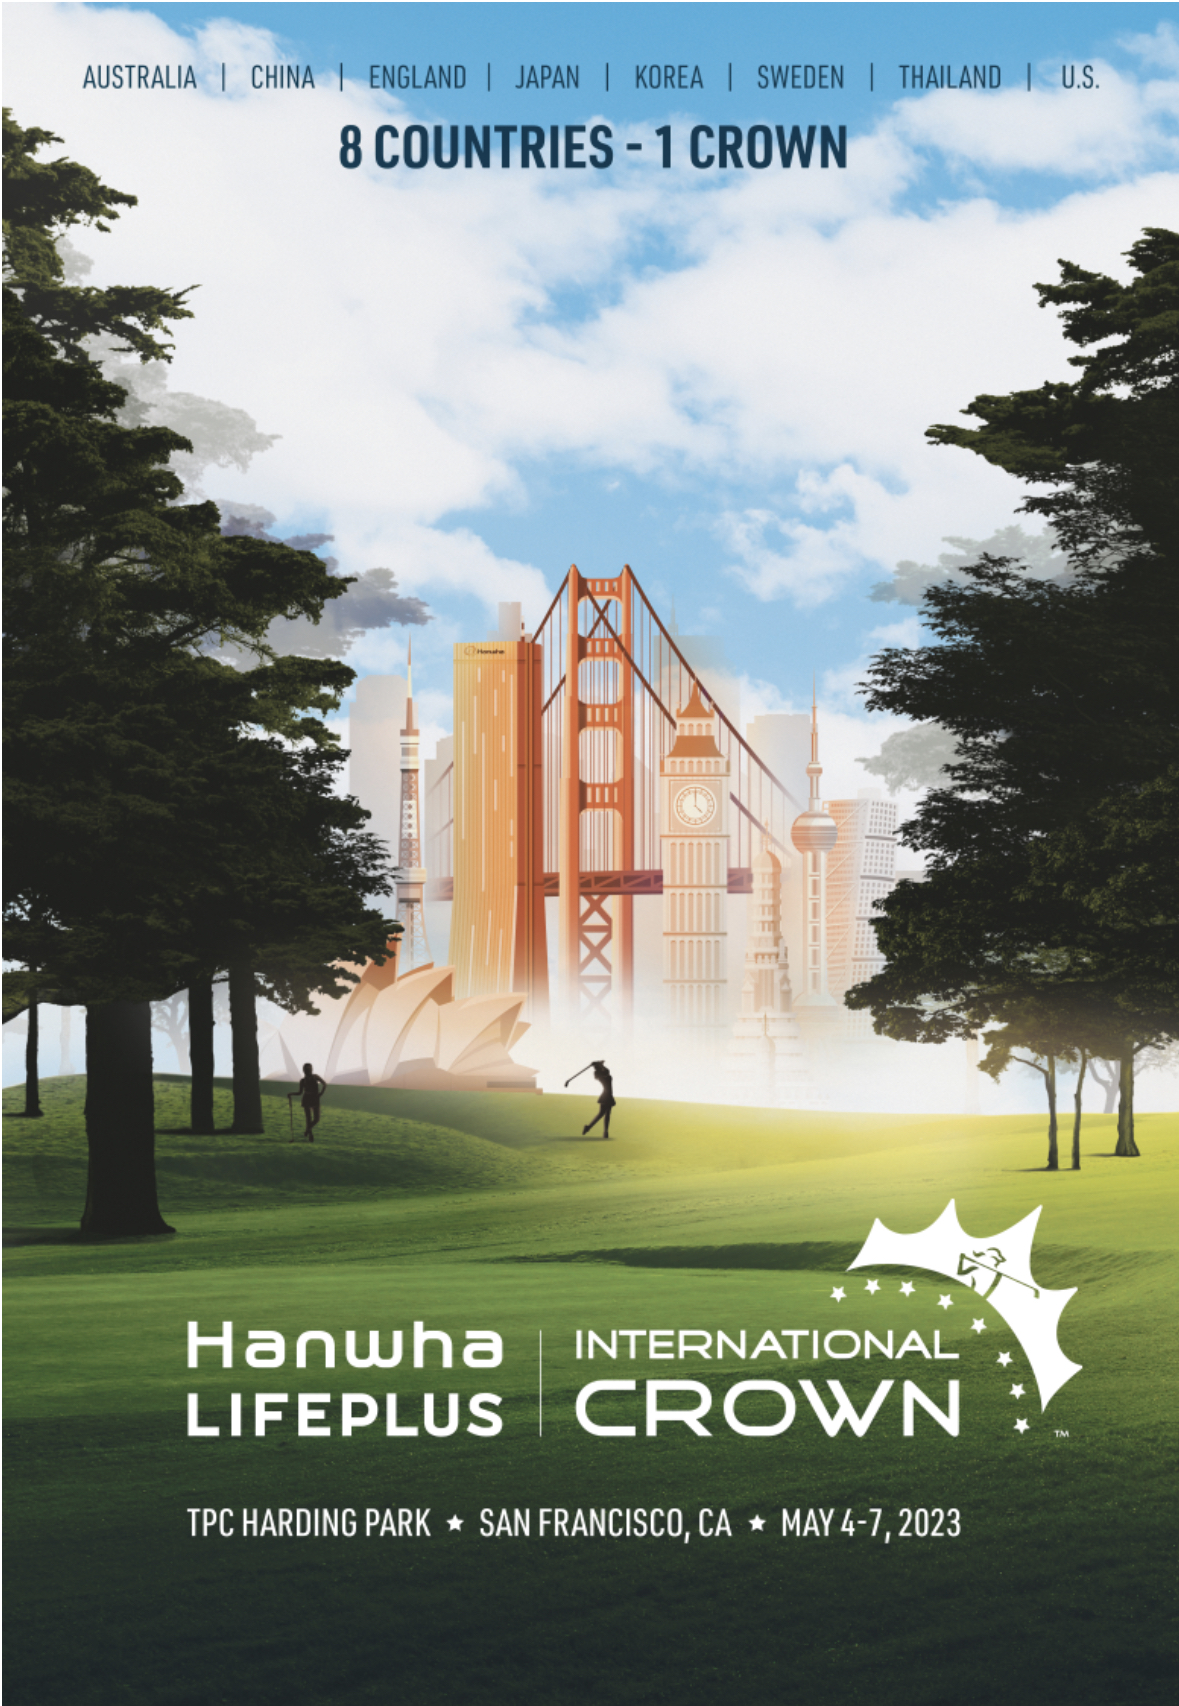 Hanwha LIFEPLUS International Crown sẽ khởi tranh chính thức từ ngày 0405 đến ngày 07052023, trên sân TPC Harding Park danh tiếng ở San Francisco, Mỹ. Tham dự tranh giải có đại diện của 8 quốc gia gồm đương kim vô địch Hàn Quốc, Mỹ, Nhật Bản, Thụy Điển, Anh, Thái Lan, Úc và Trung Quốc. Sự góp mặt của các Golf nữ hàng đầu thế giới sẽ khiến giải đấu càng trở nên tuyệt vời.